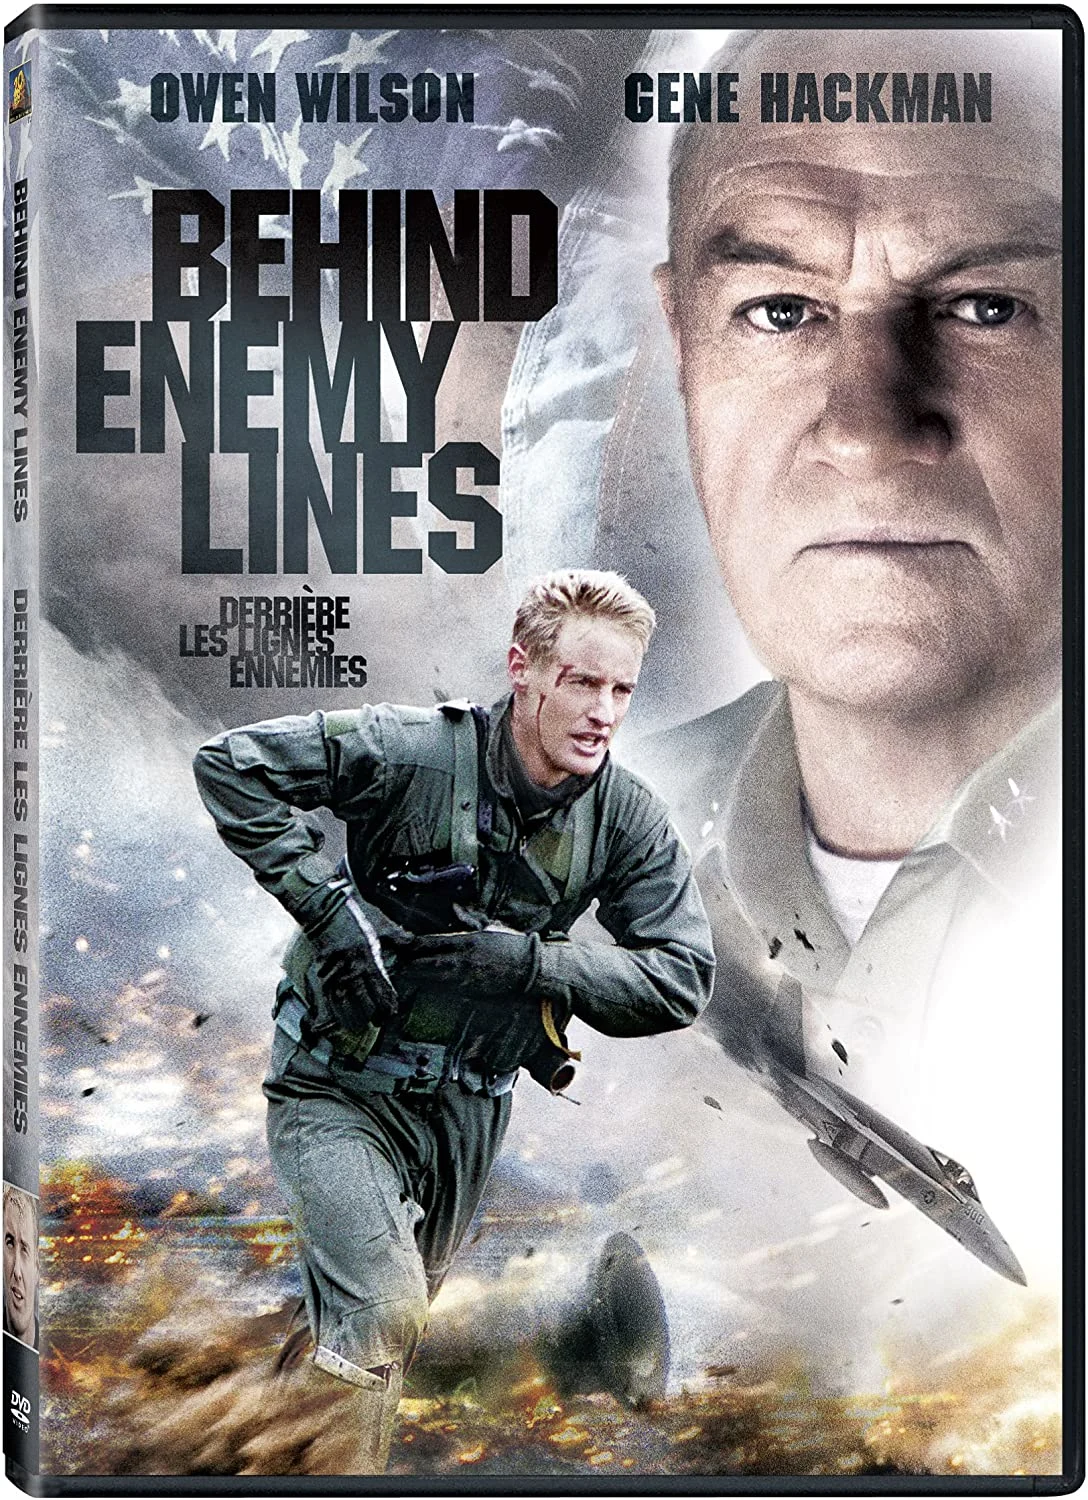 Behind Enemy Lines (DVD) on MovieShack